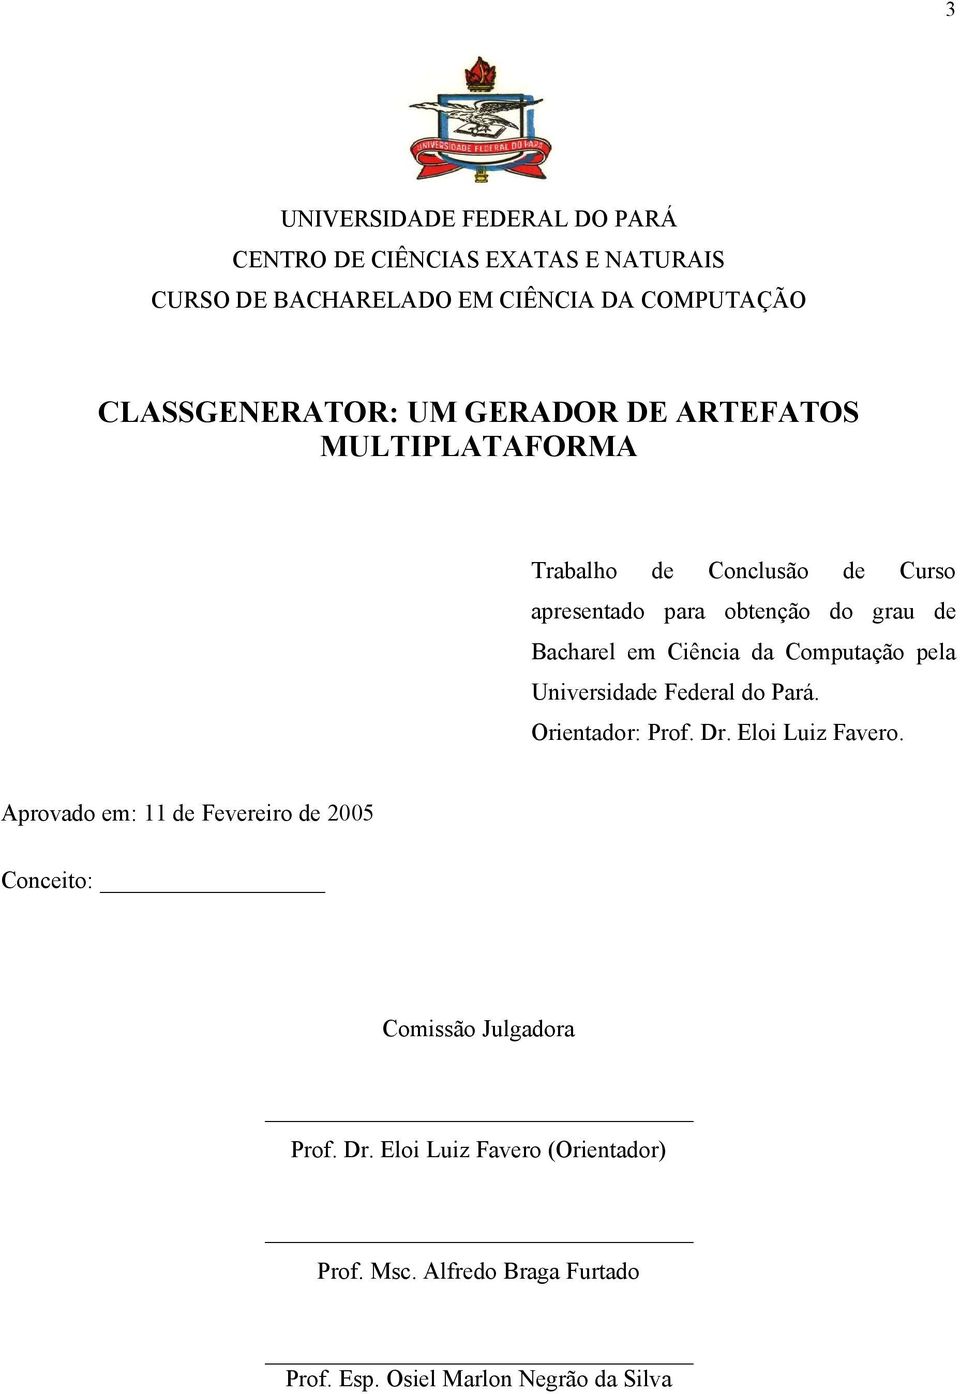 Computação pela Universidade Federal do Pará. Orientador: Prof. Dr. Eloi Luiz Favero.